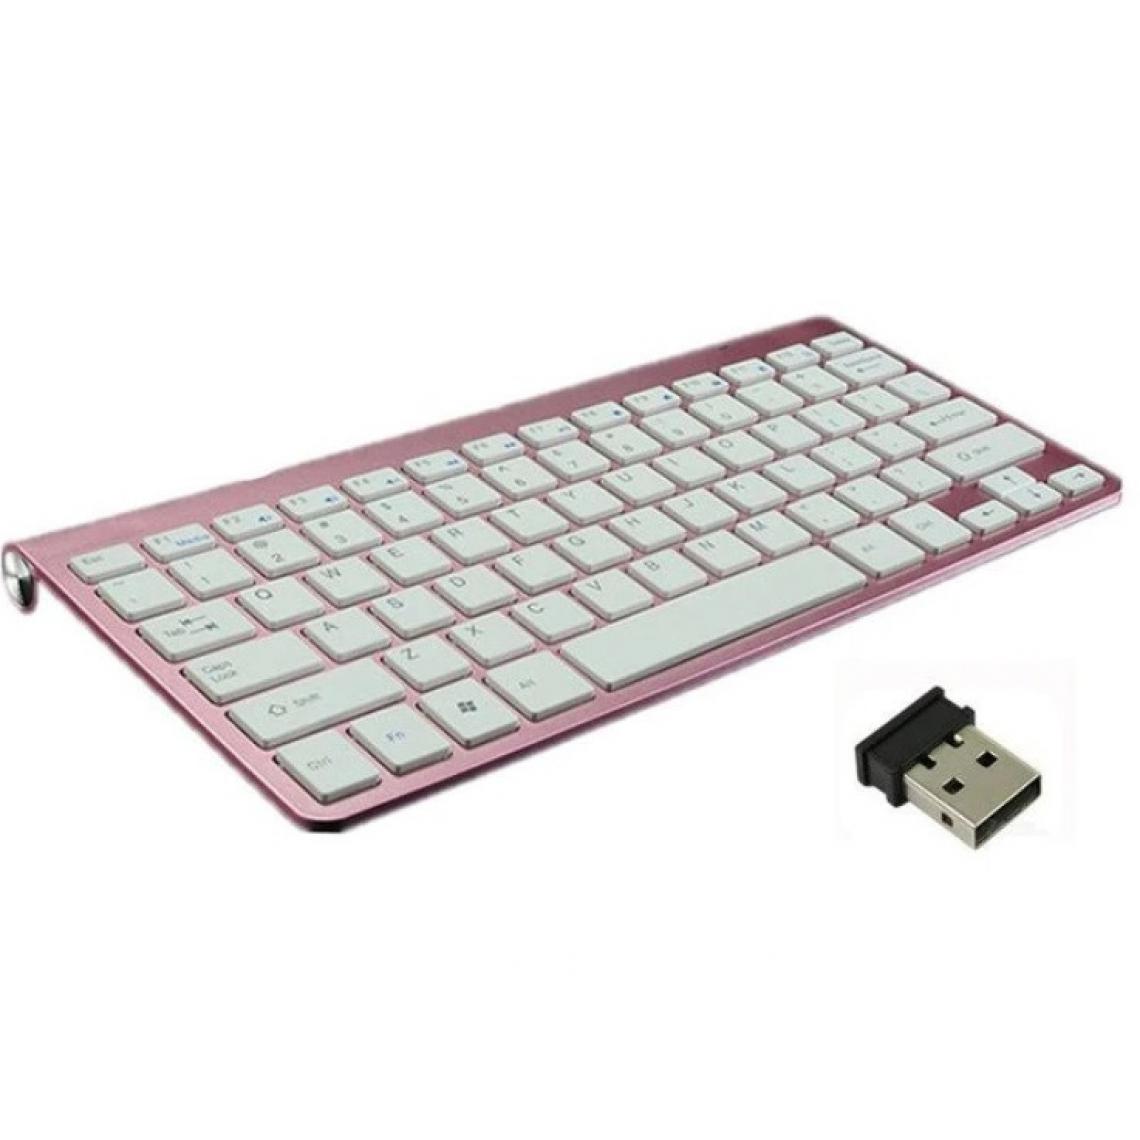 Shot - Clavier Sans Fil Metal pour PC ASUS X USB QWERTY Piles (ROSE) - Clavier